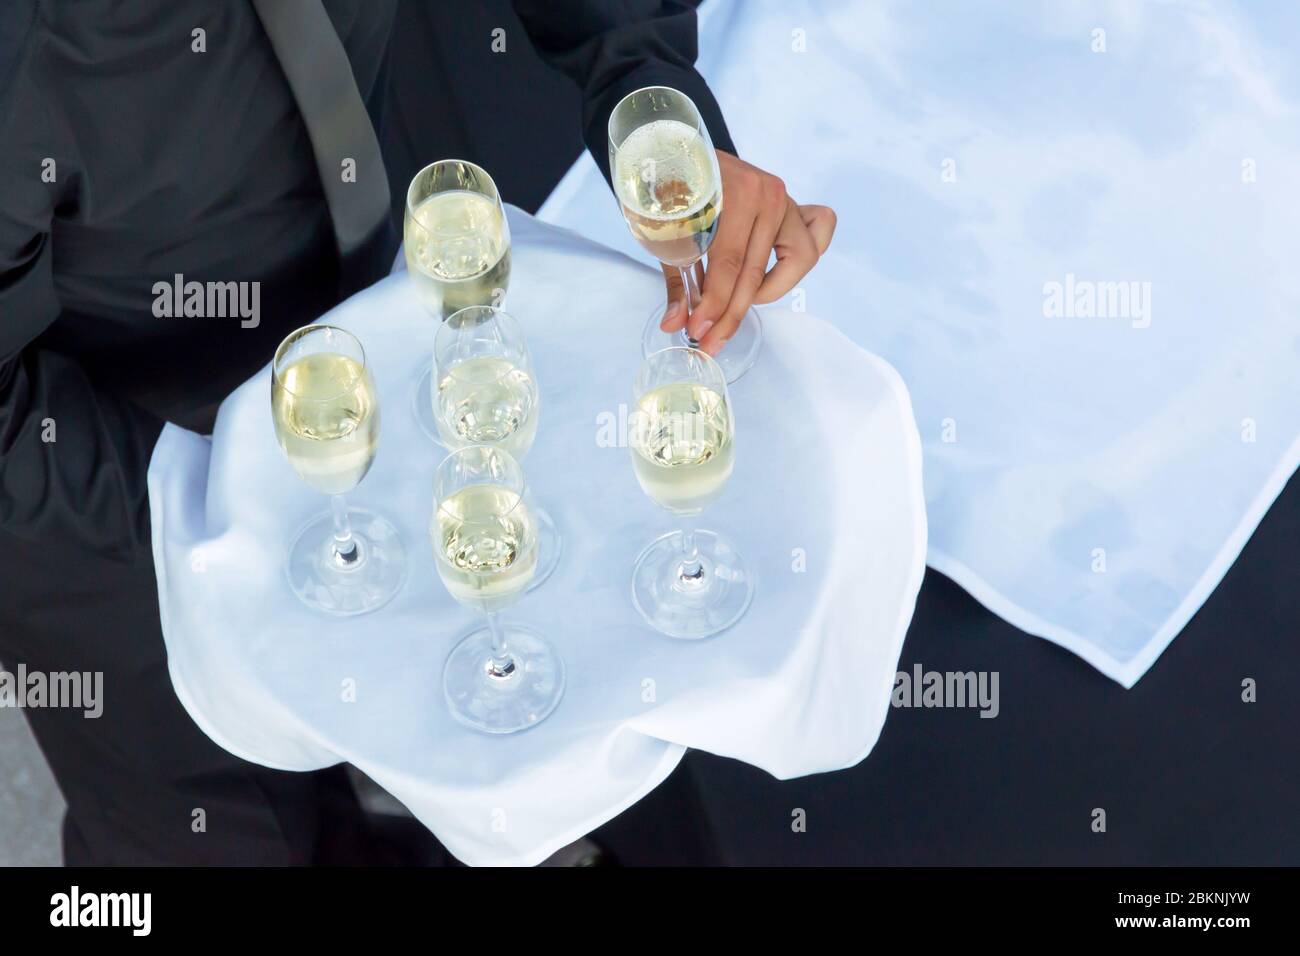 Vista superior de un camarero sosteniendo una bandeja con copas de champán o de blanco gana, catering de bebidas en una fiesta de cócteles Foto de stock